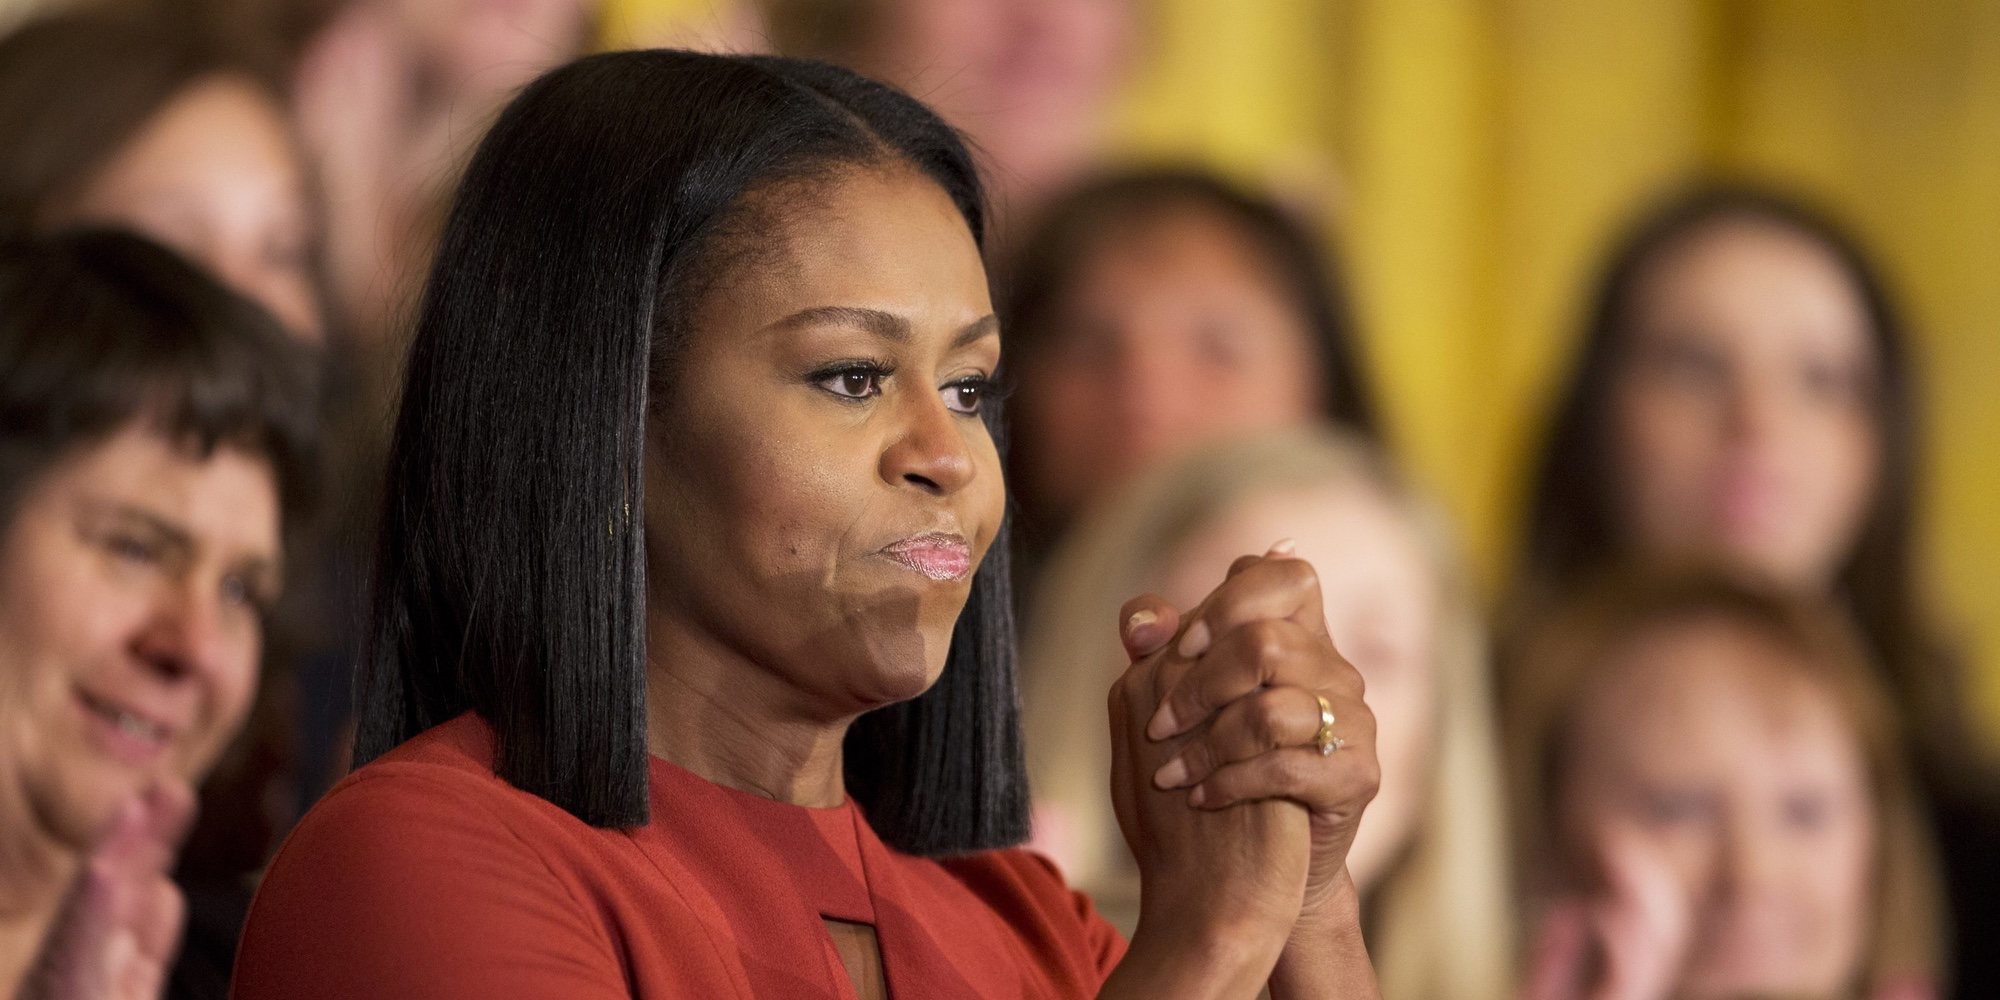 Michelle Obama confiesa el peor momento de su vida: "Me sentí perdida y sola tras el aborto"